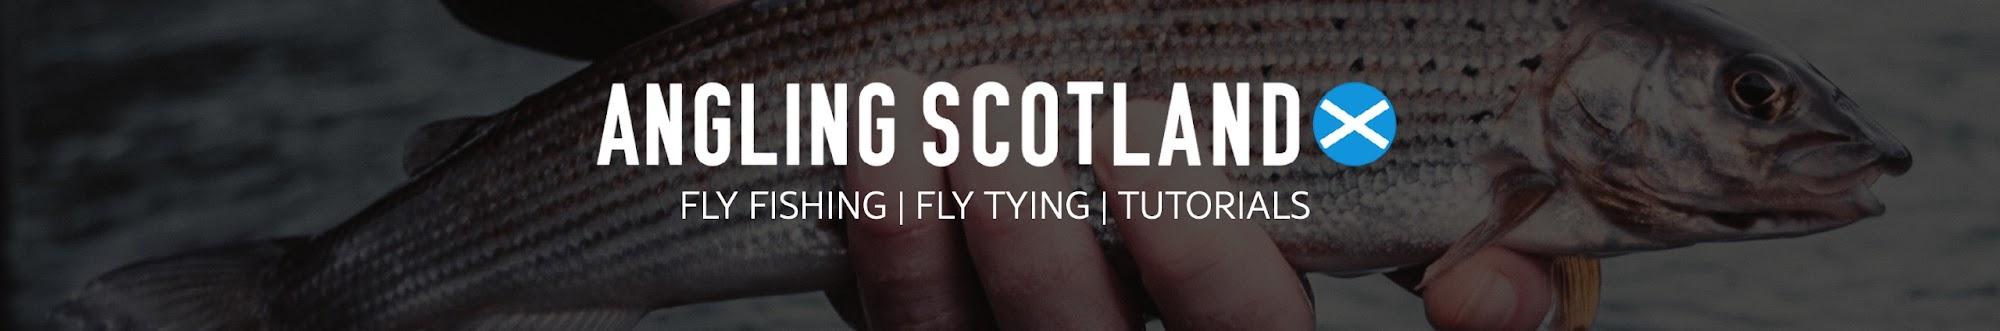 Angling Scotland